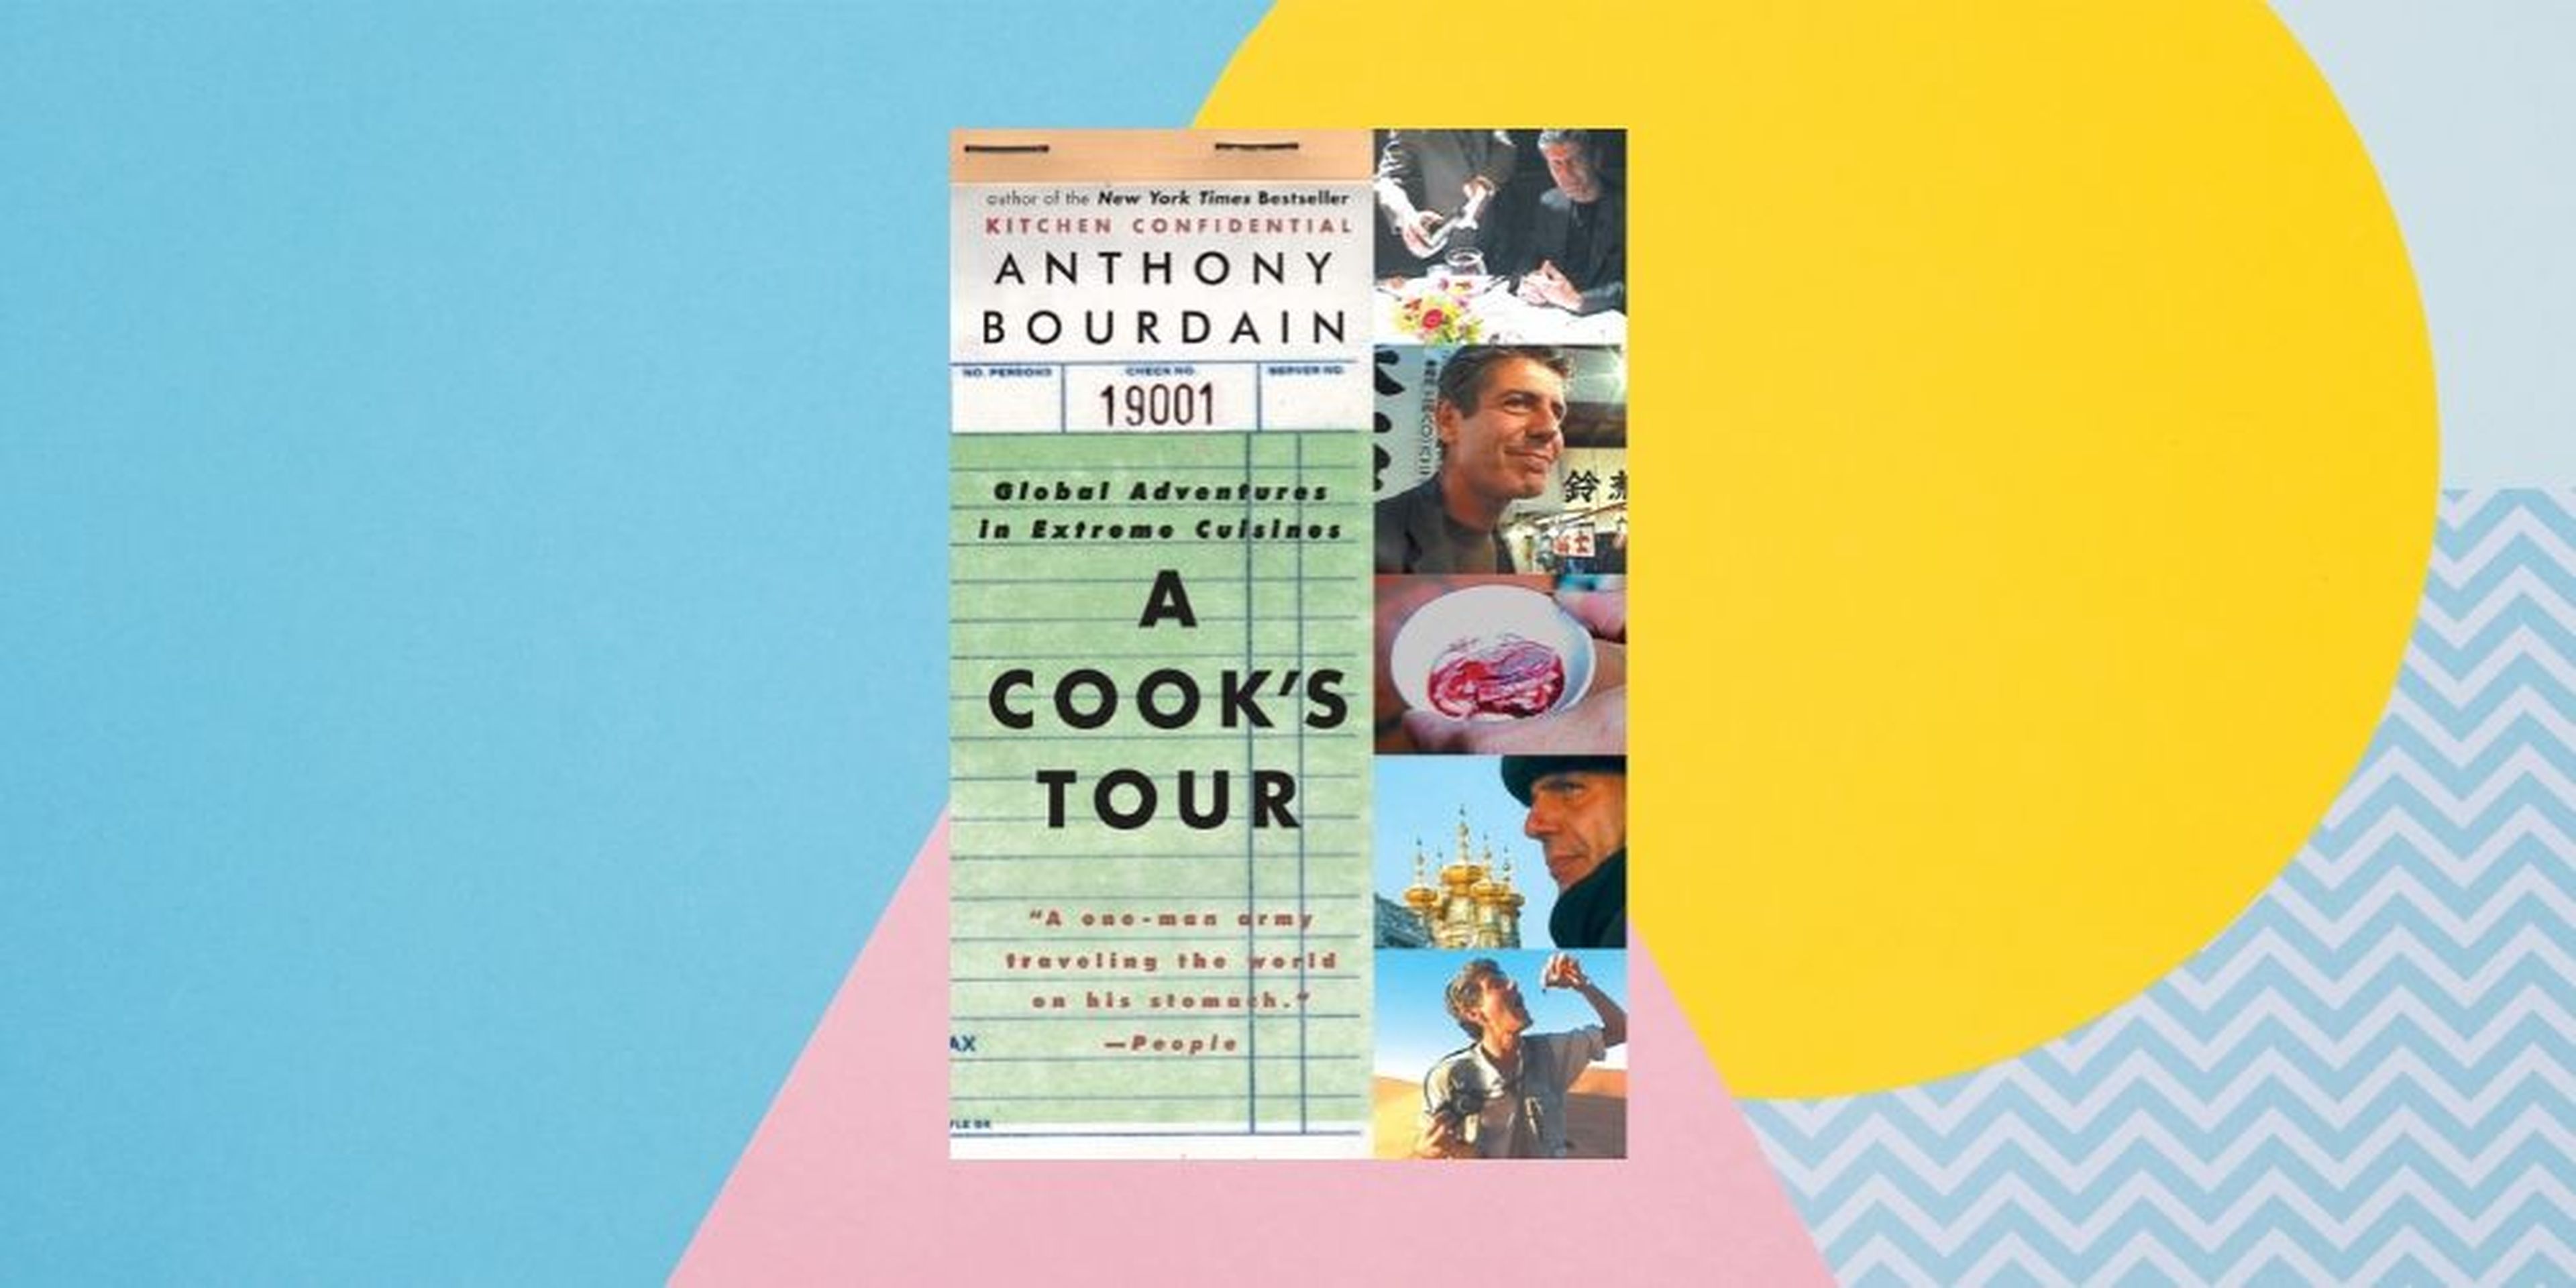 Las memorias culinarias más vendidas de Anthony Bourdain